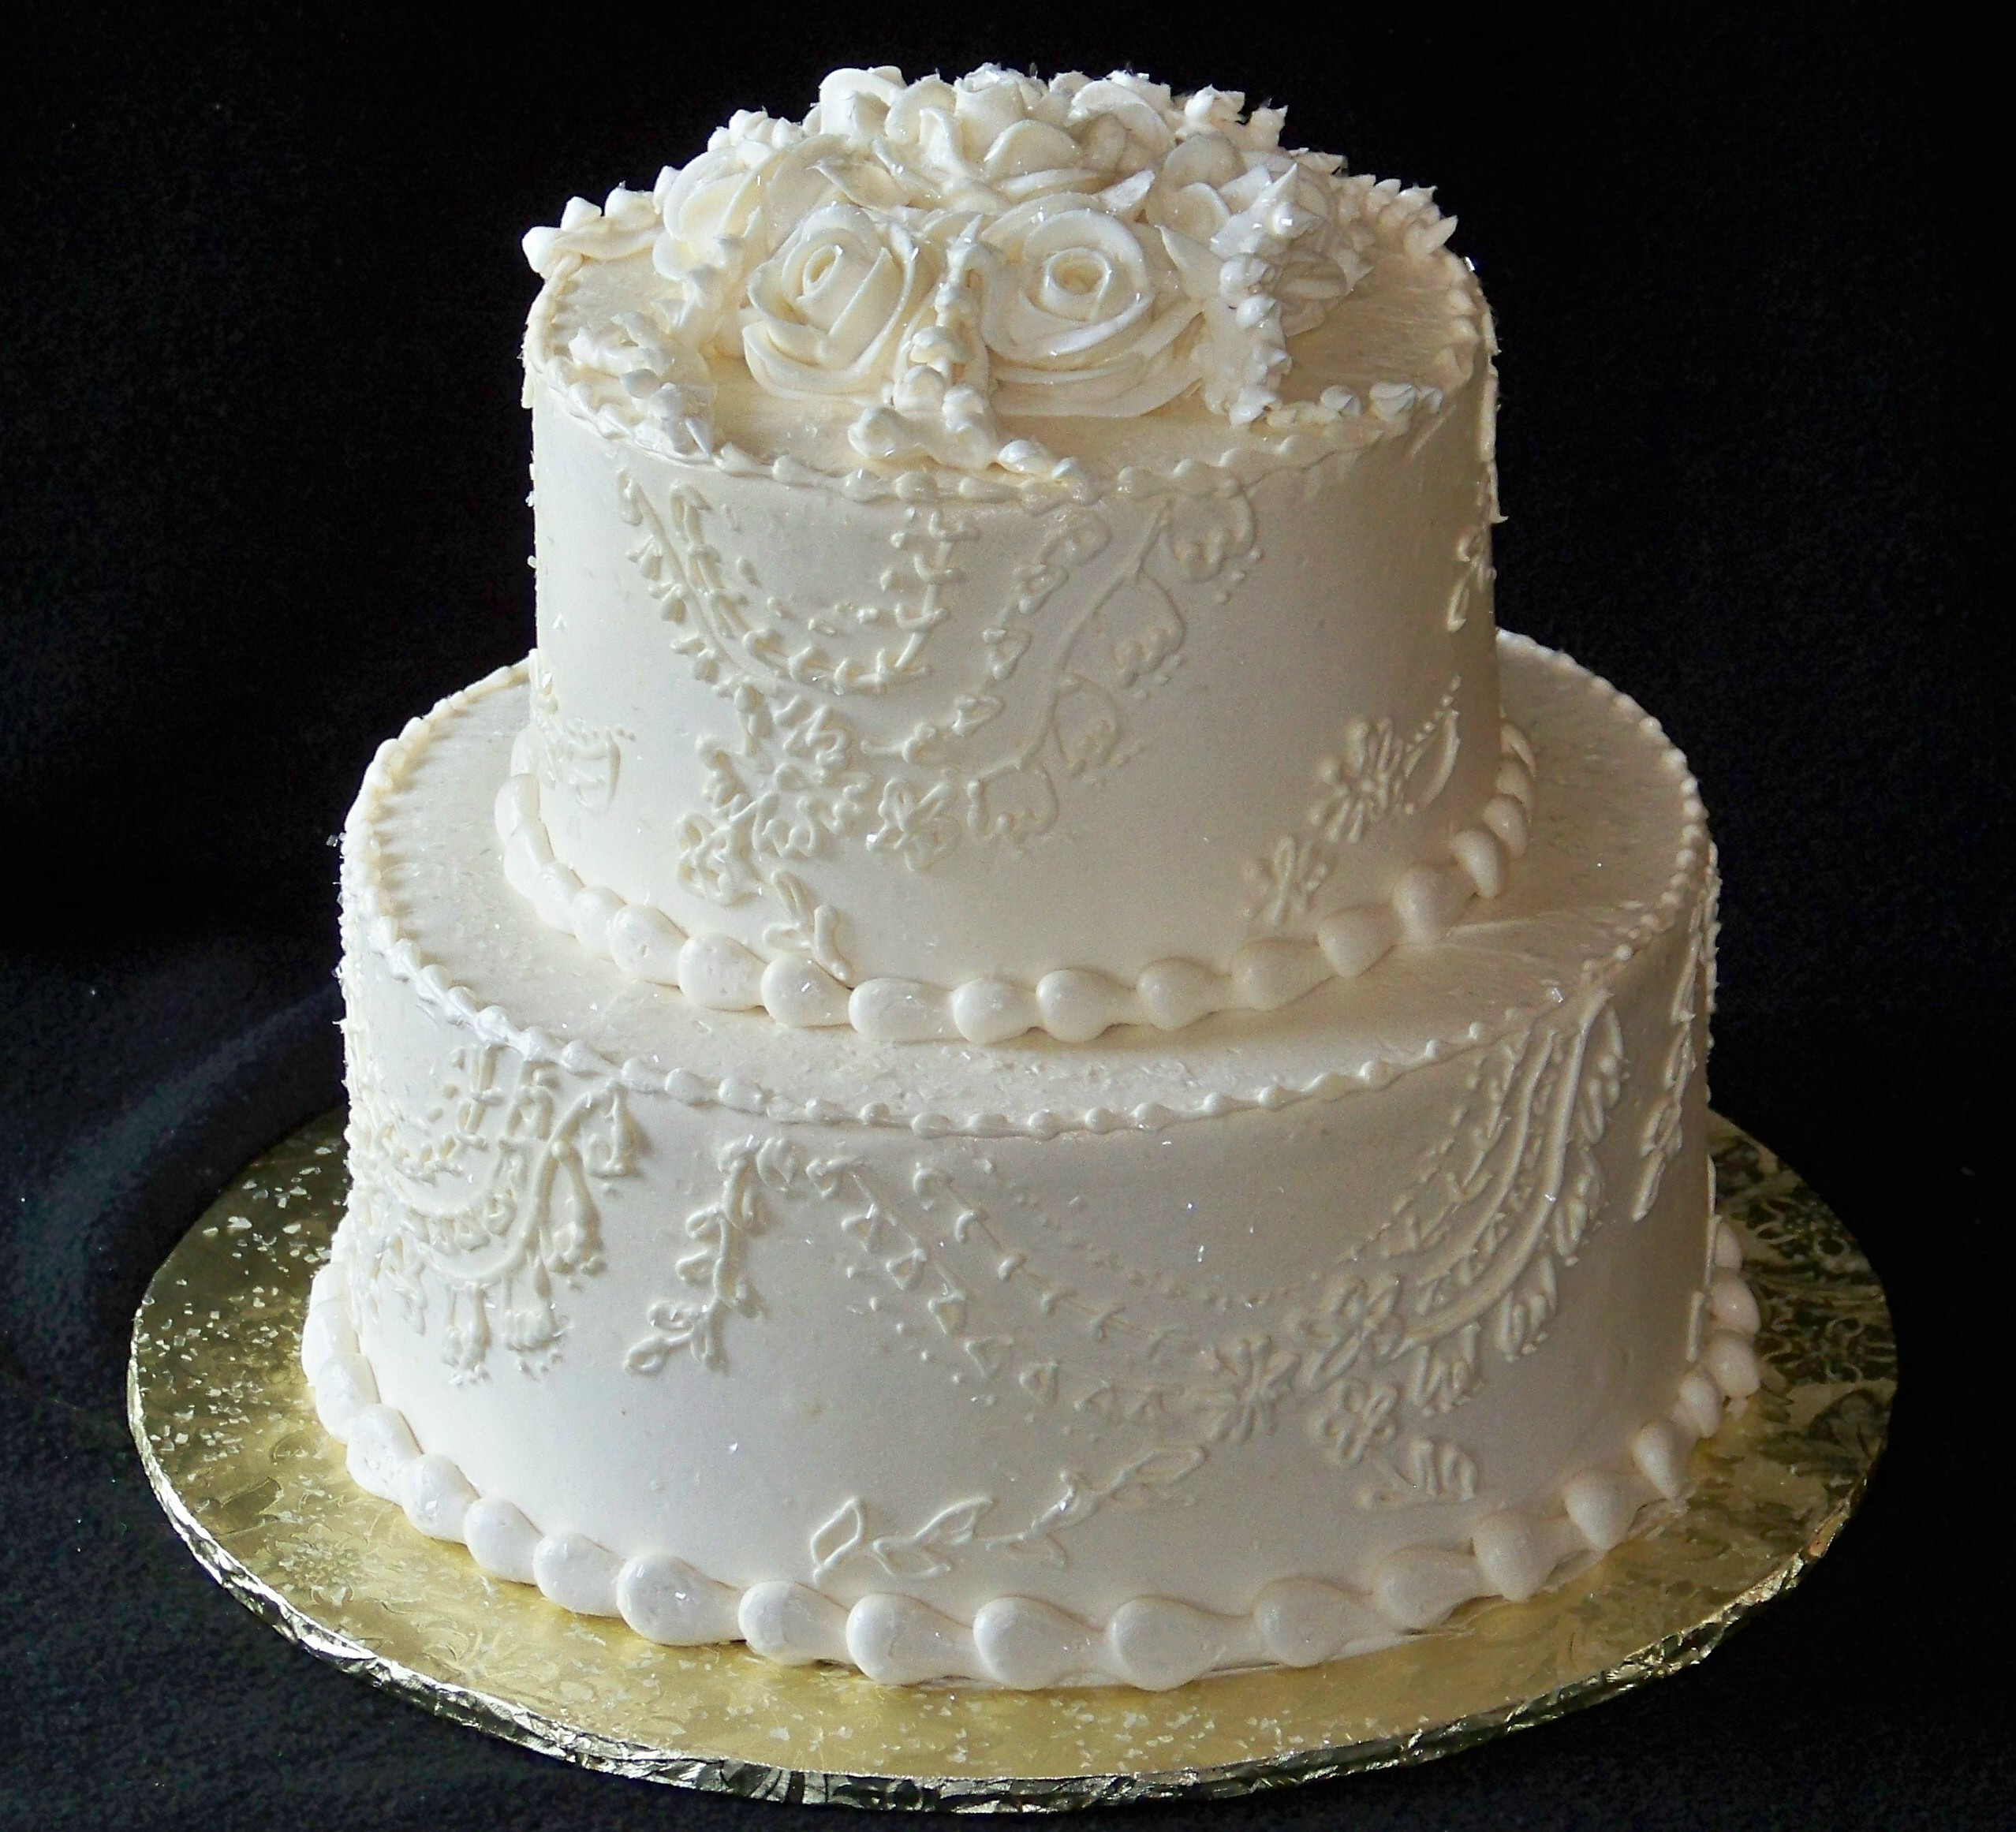 2 Tier Wedding Cakes
 tieredspecialoccasioncakes2